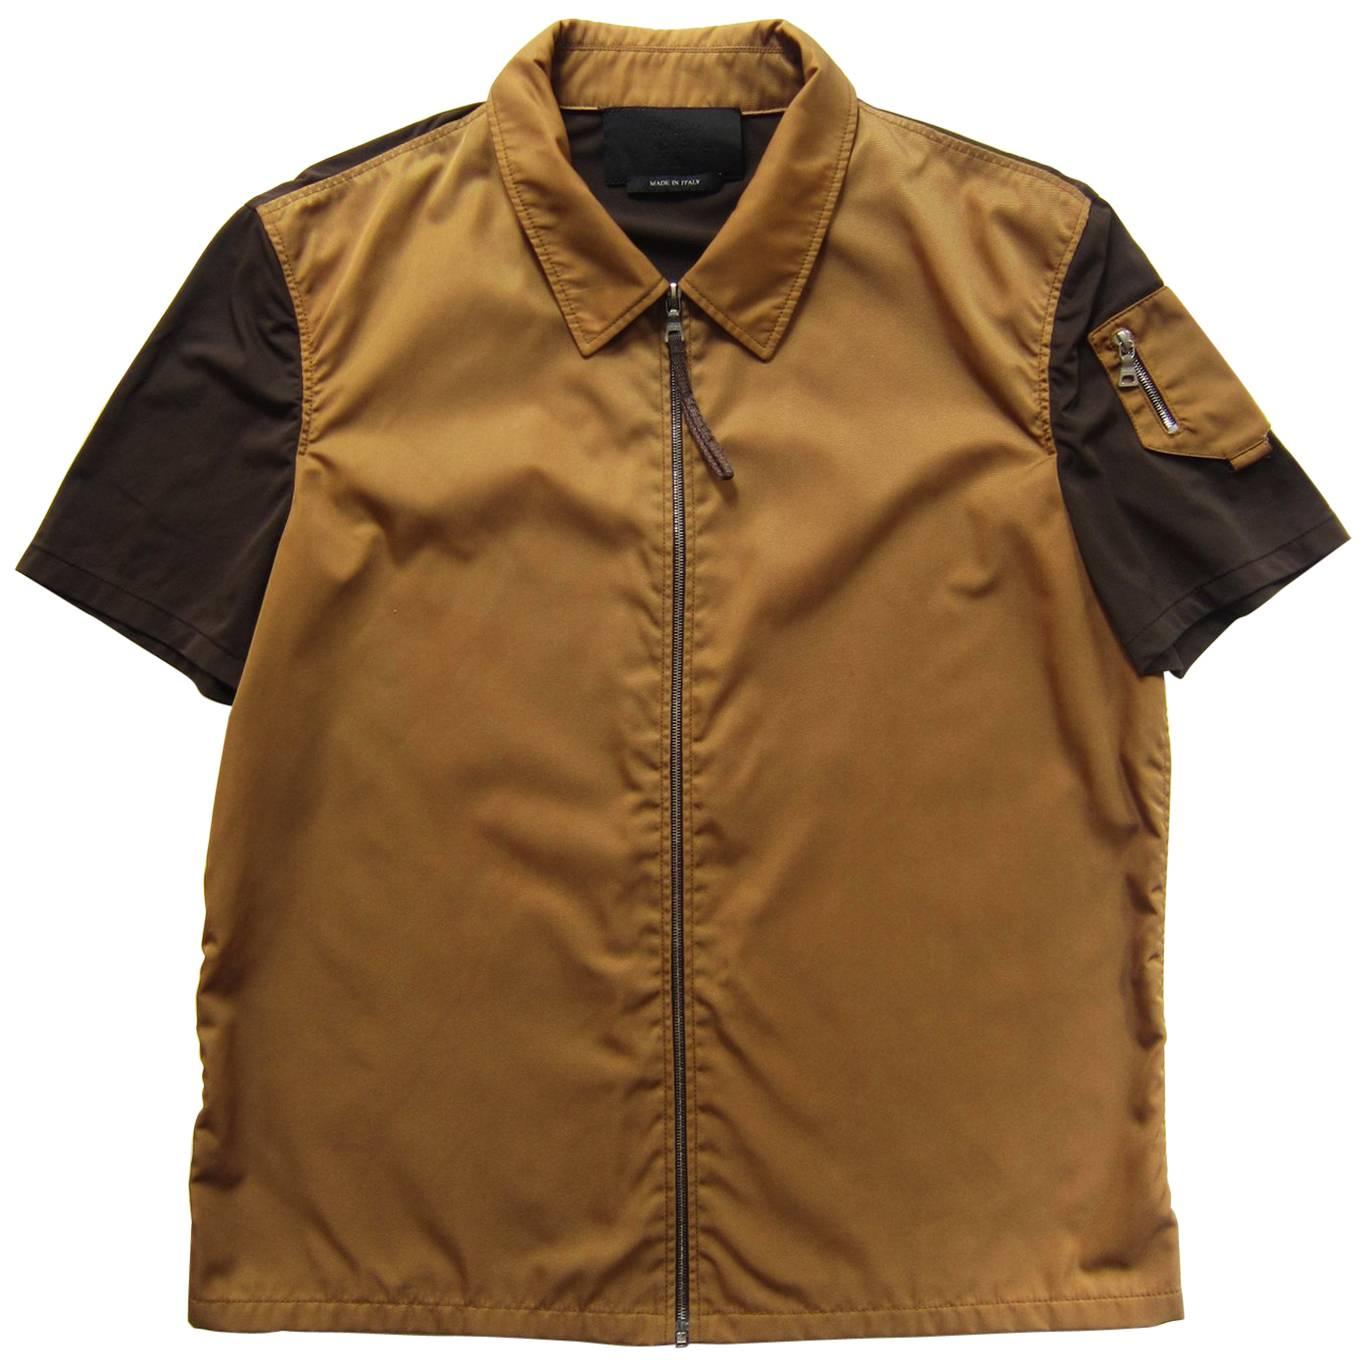 Prada Nylon Top Zip Front Jacket 1990s